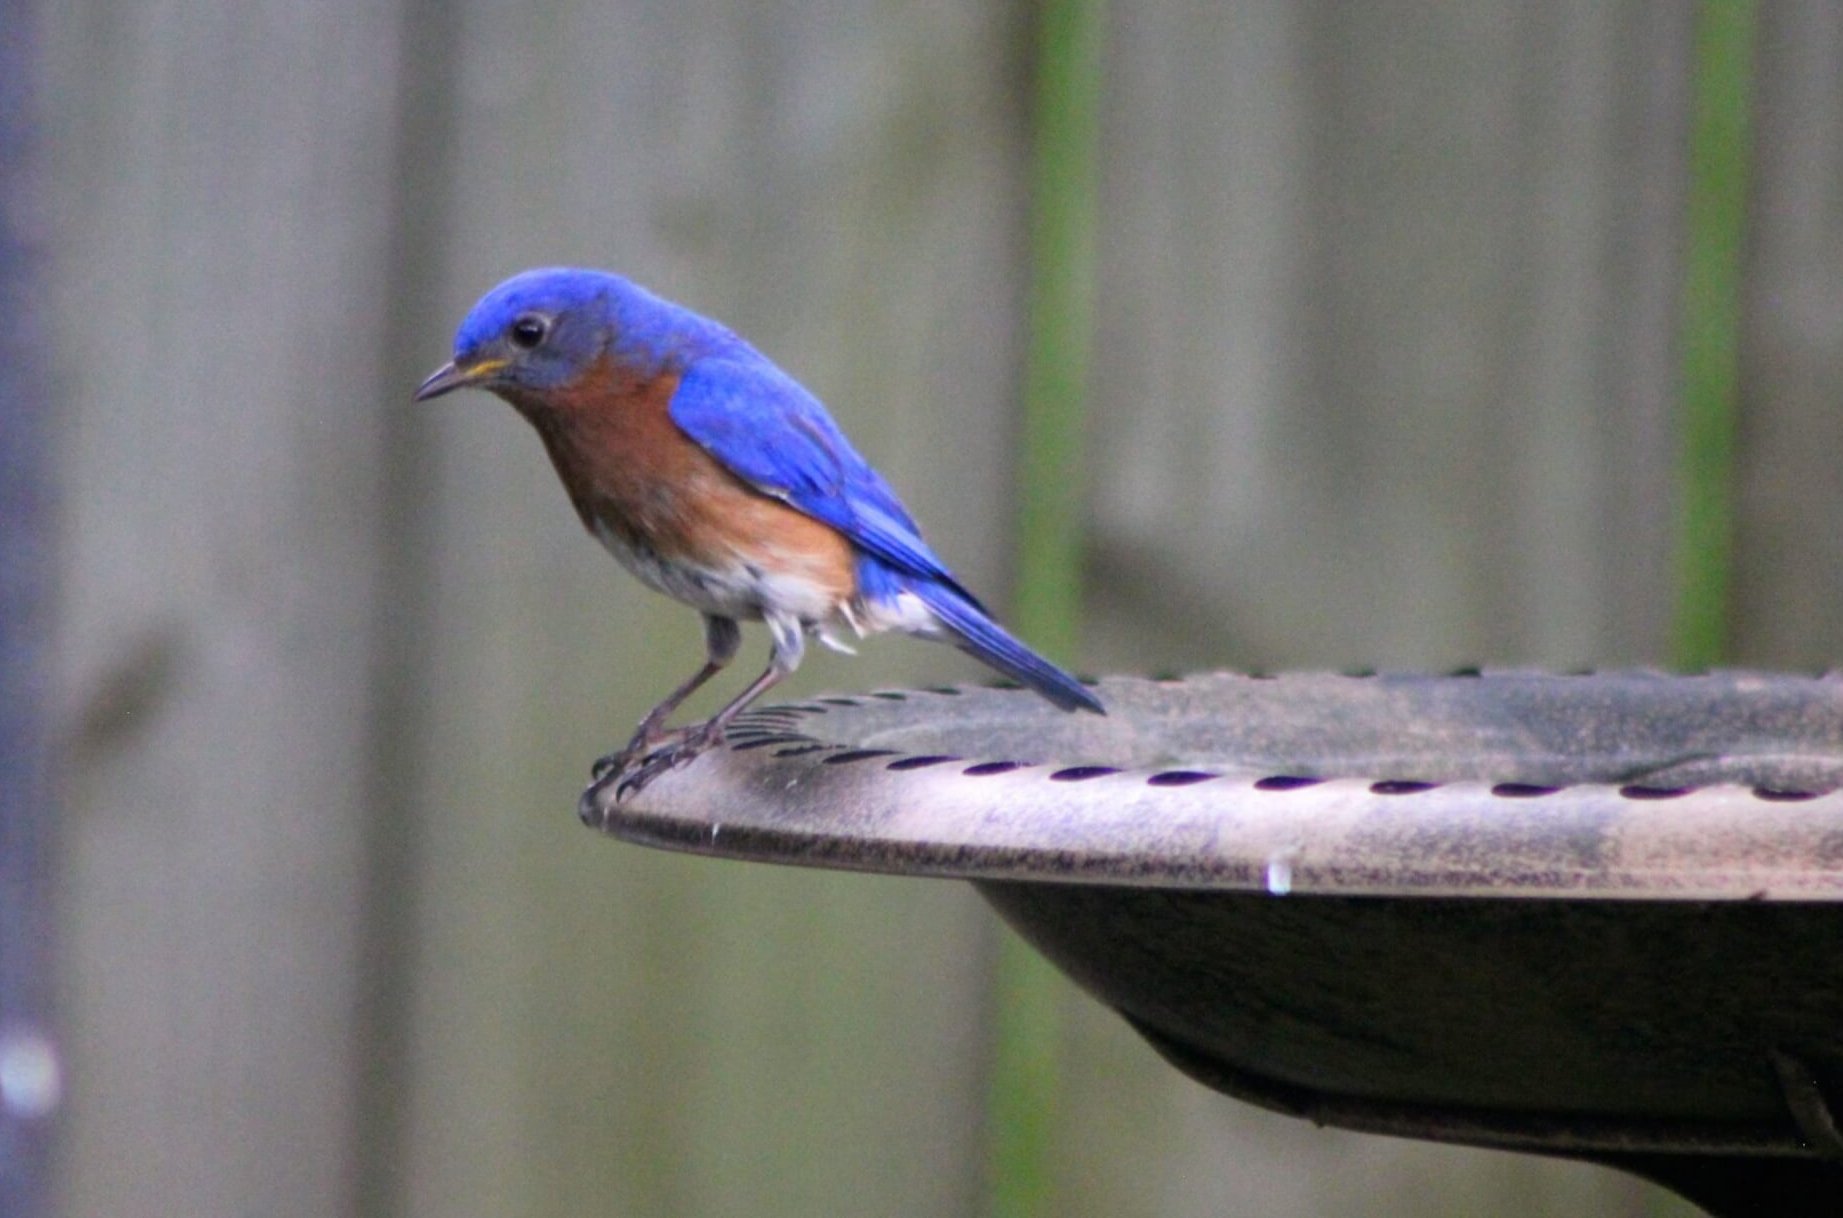 An Eastern Bluebird enjoying the birdbath in Outcalt's yard.